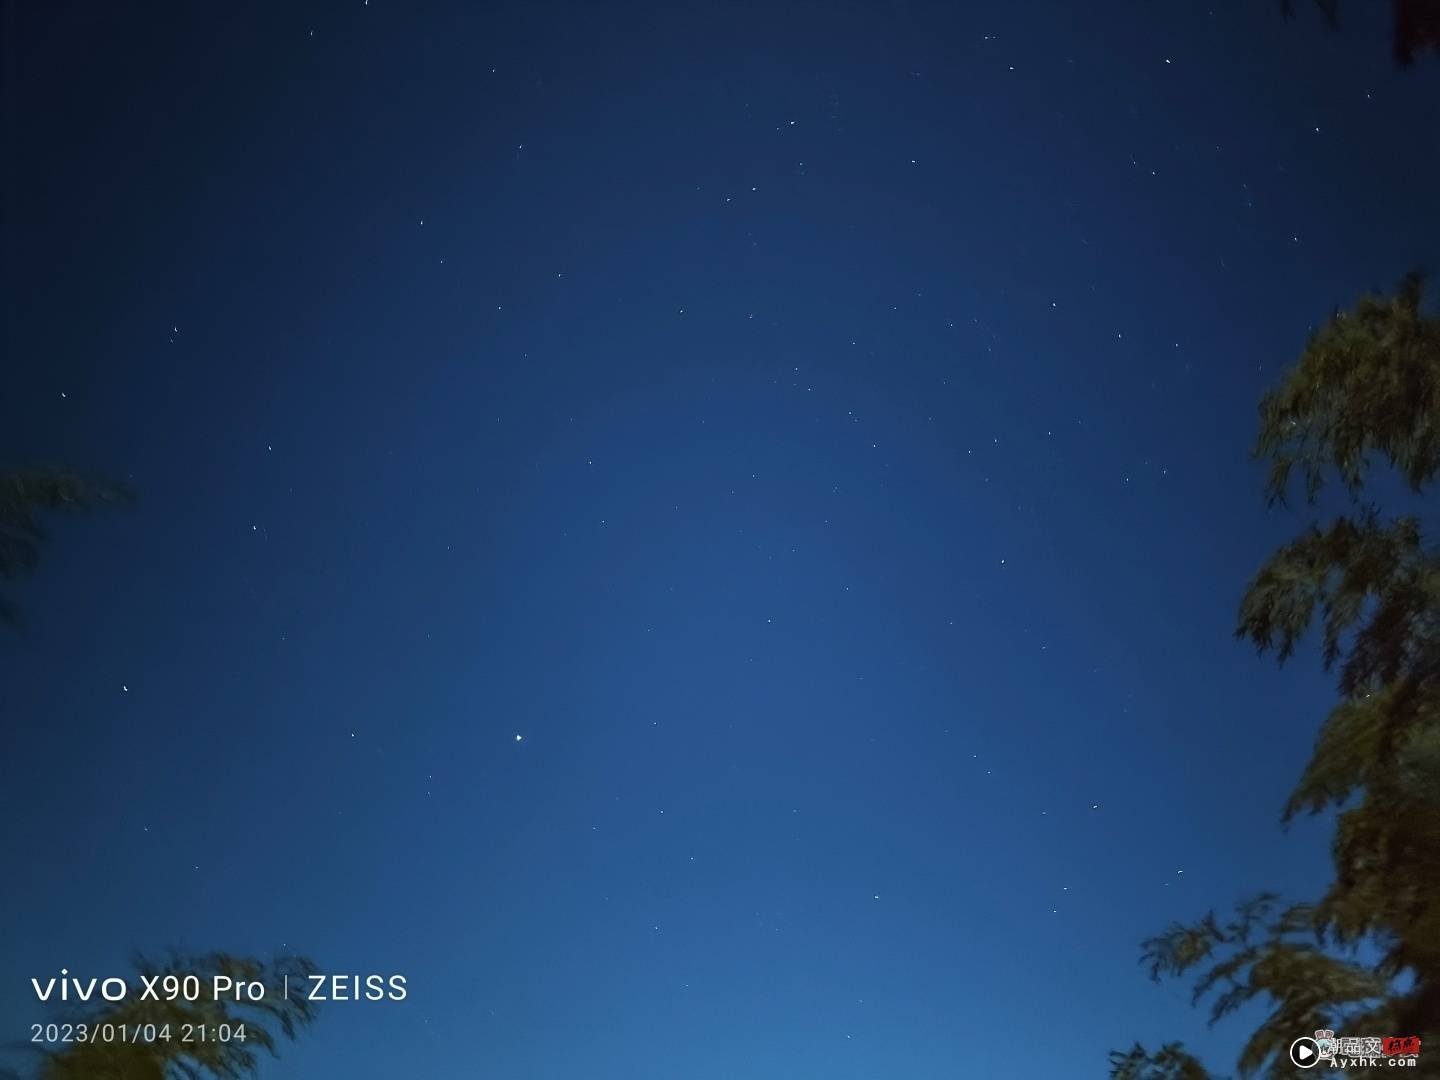 出门实拍｜vivo X90 Pro 登场！阿里山的星空云海美景全记录 数码科技 图13张